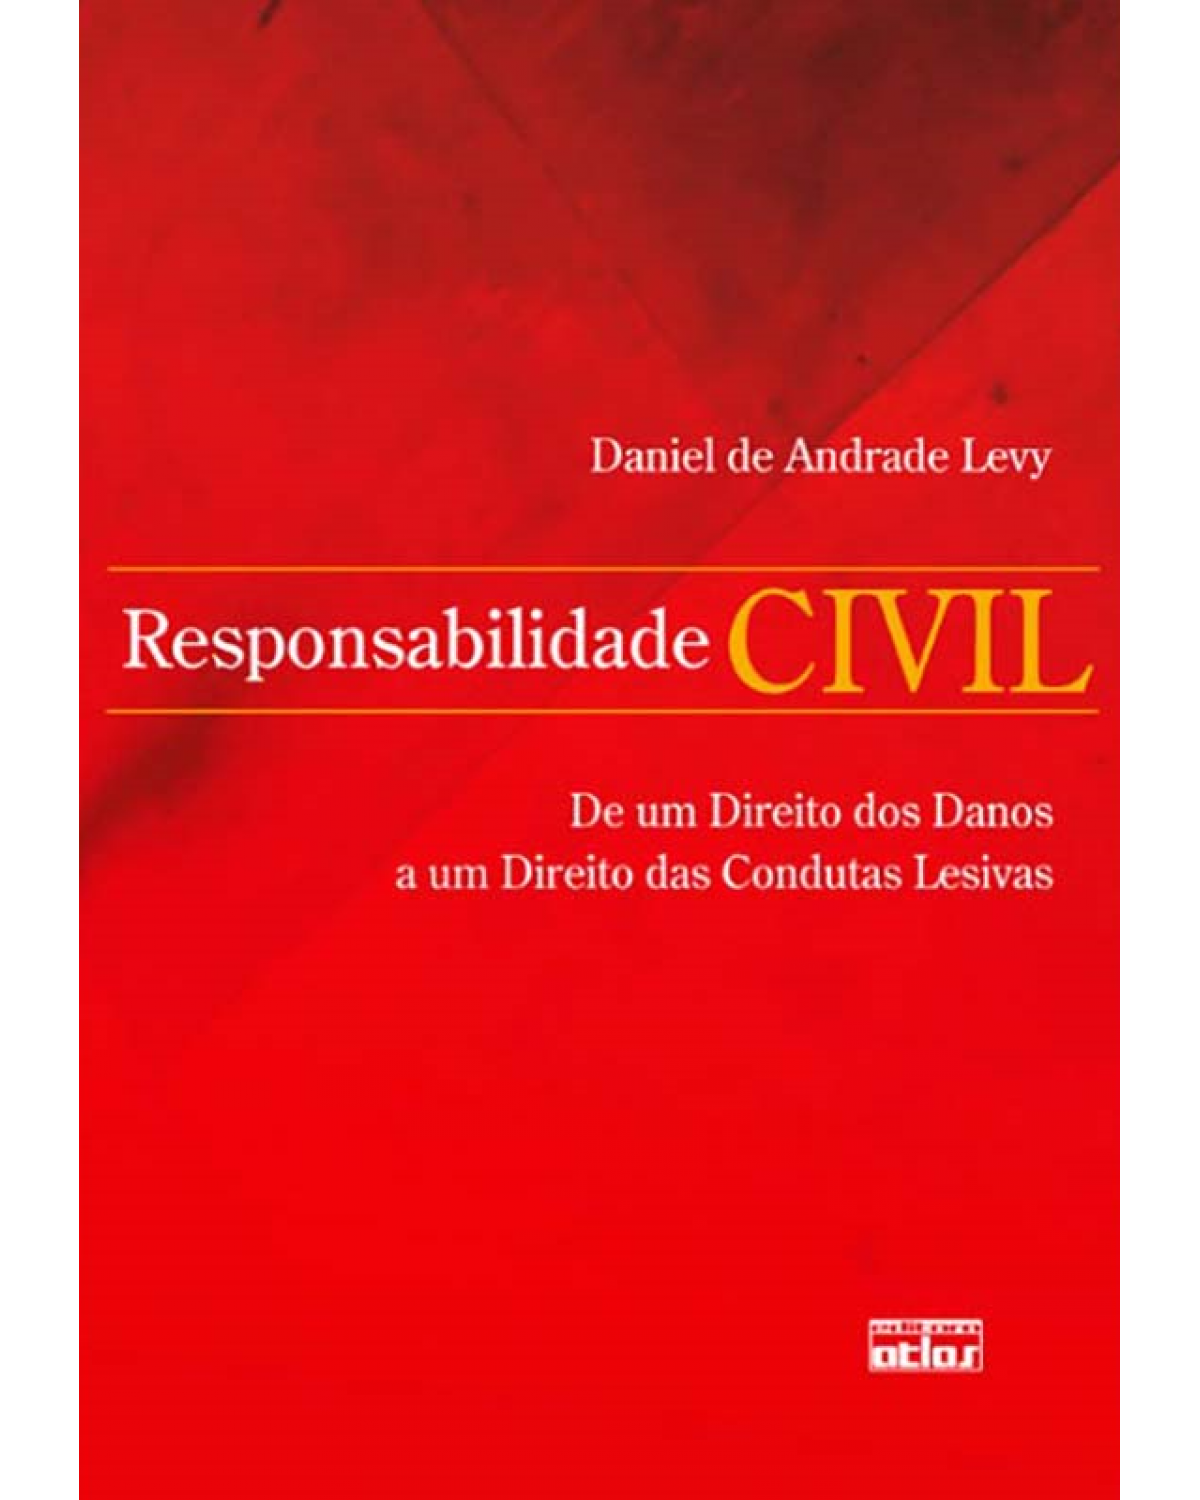 Responsabilidade civil - De um direito dos danos a um direito das condutas lesivas - 1ª Edição | 2012